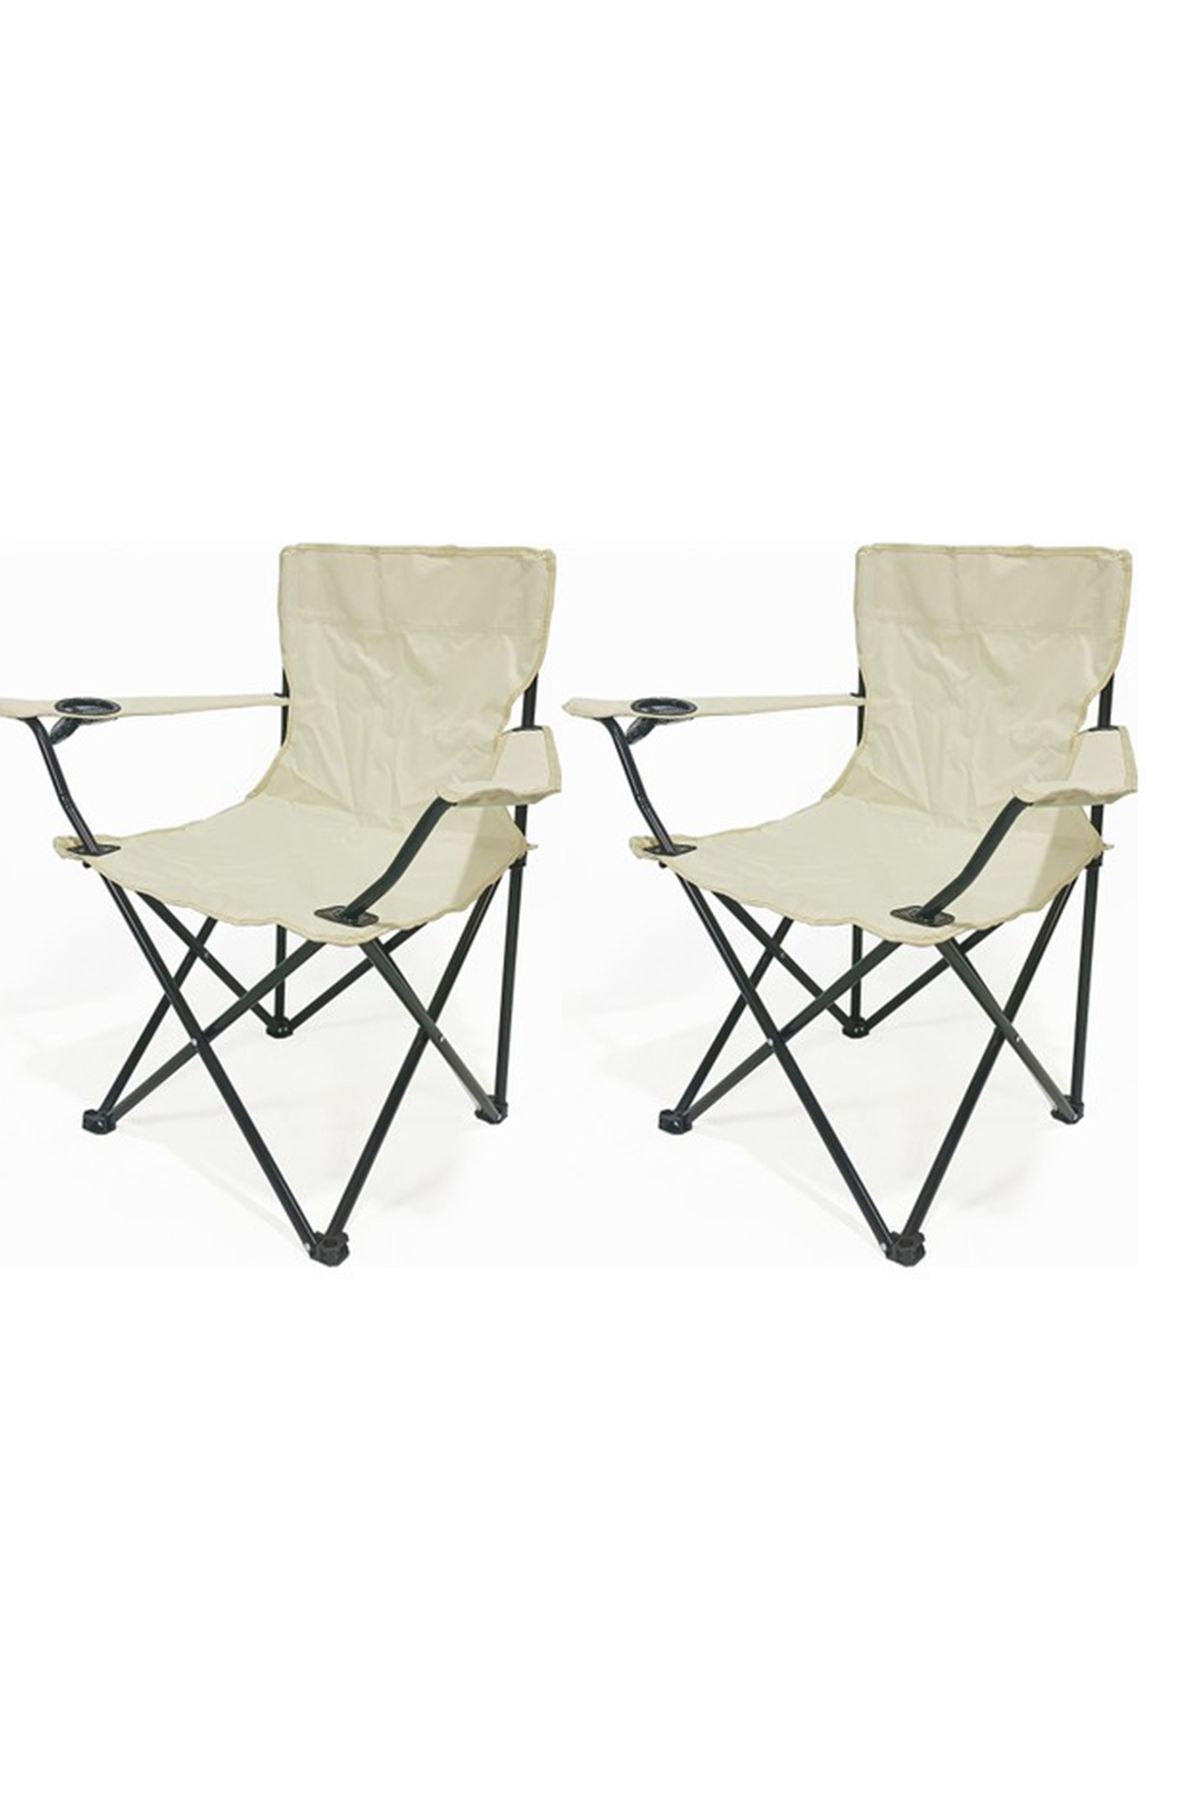 BIZAGA Kamp sandalyesi, katlanabilir 2'li set,hafif taşınabilir sandalye,100 kg'a kadar taşıma kapasitesi